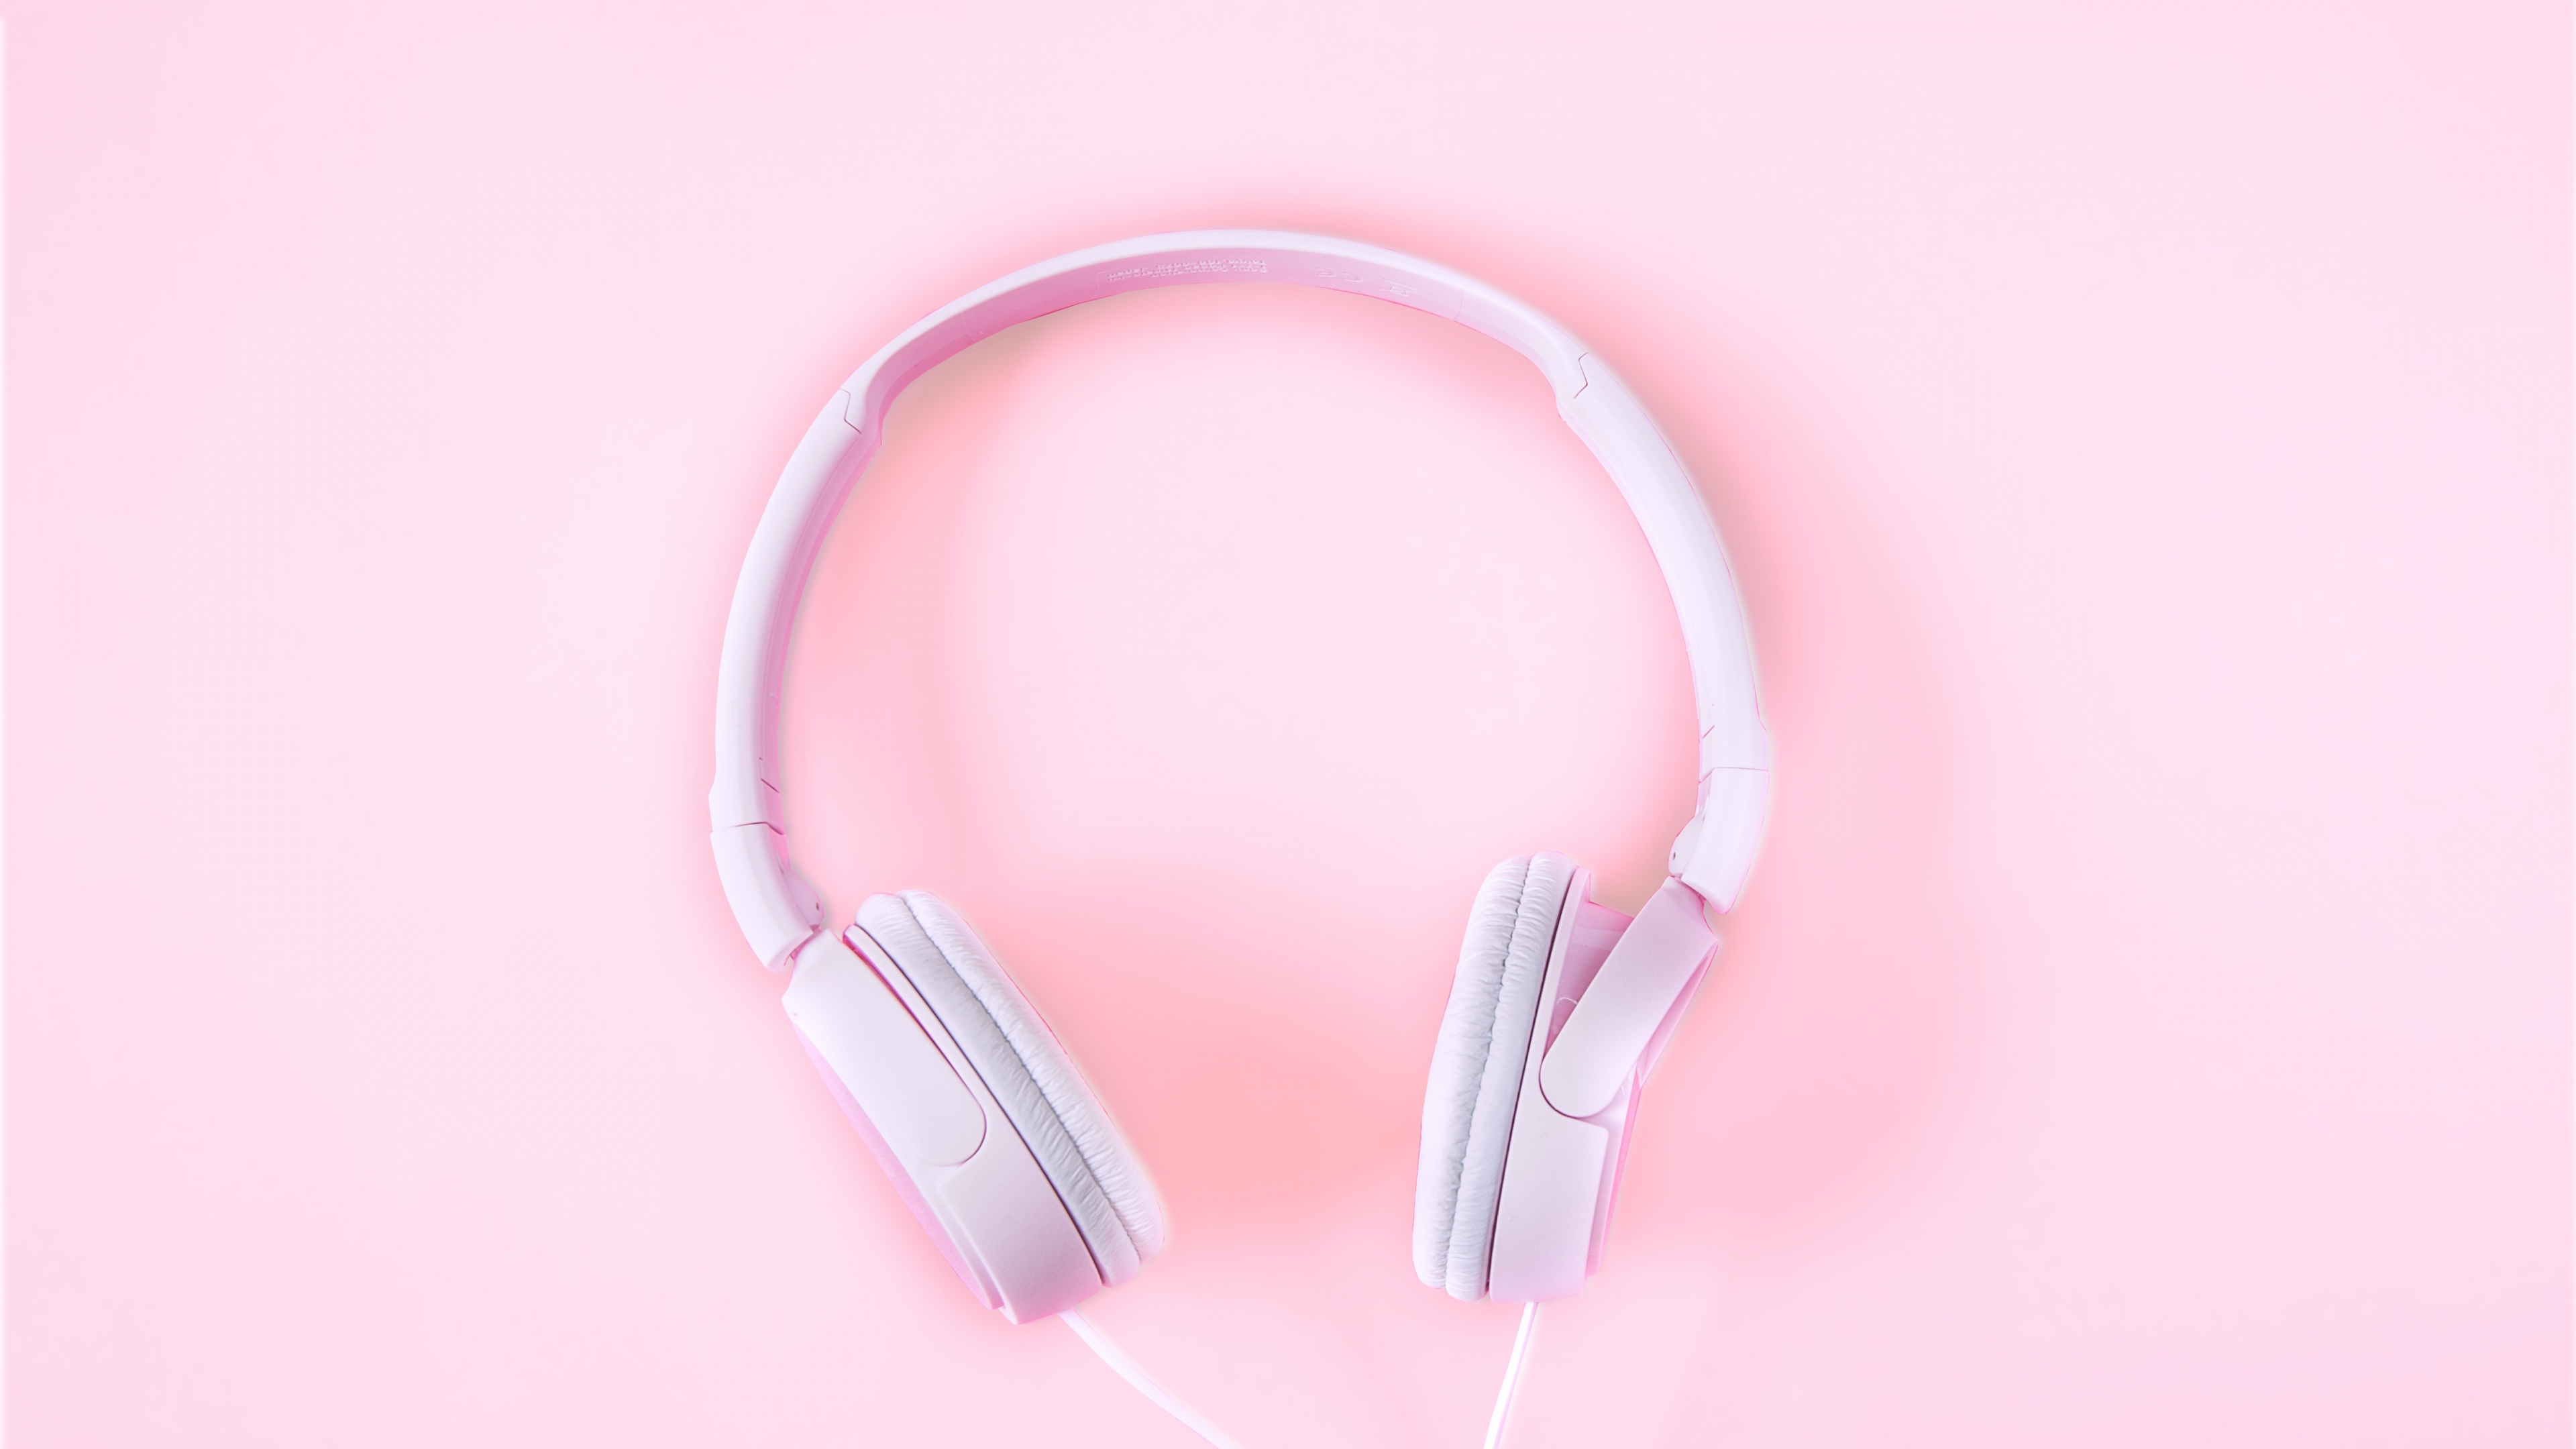 粉红色, 音频设备, 小工具, 耳朵, 电子设备 壁纸 3840x2160 允许